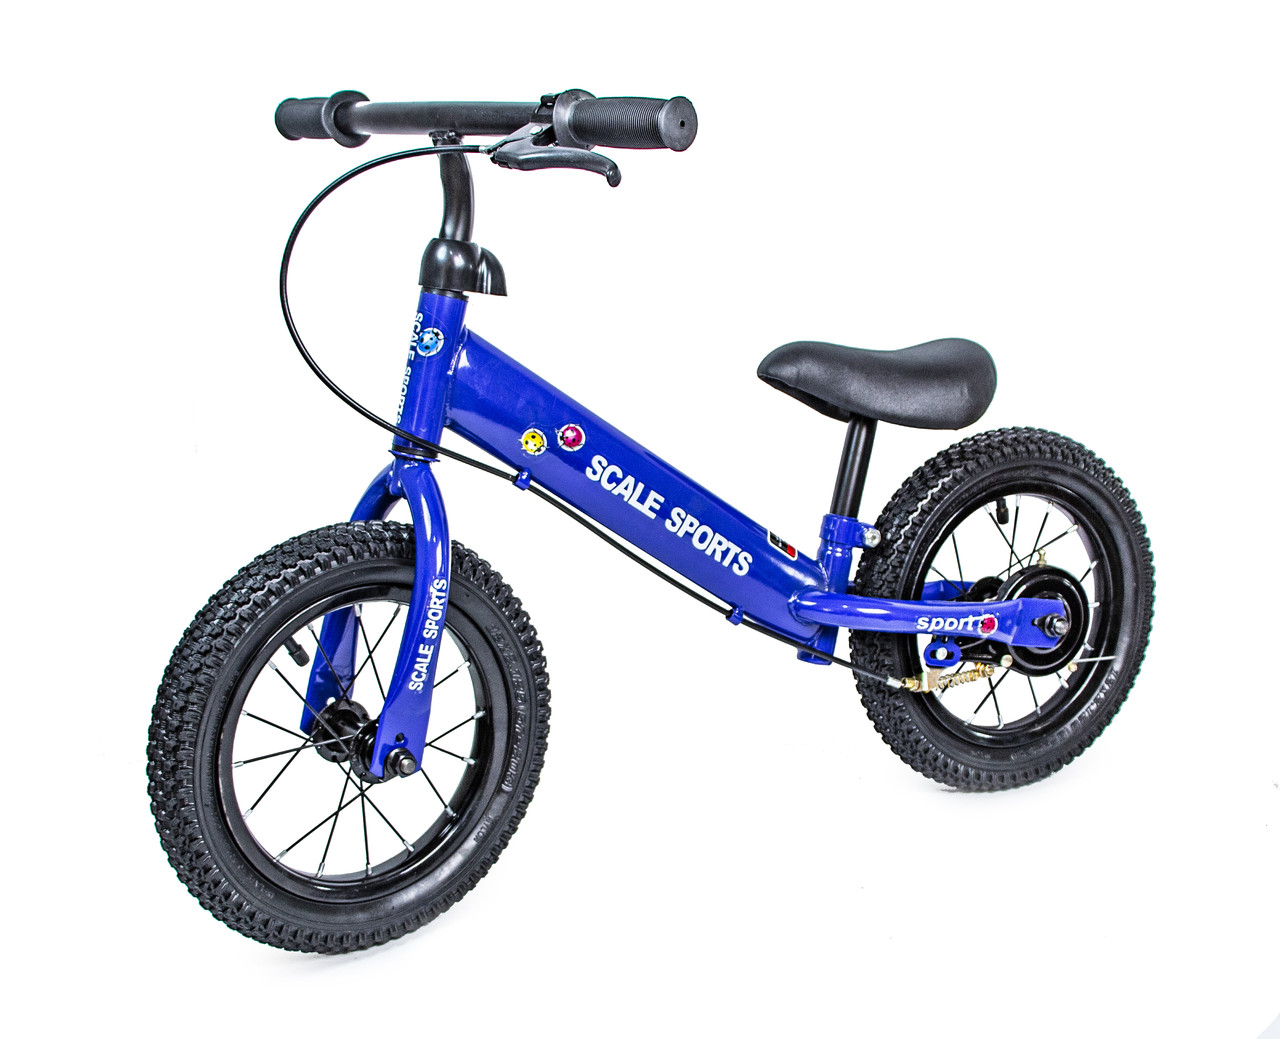 Дитячий велобіг із ручним гальмом Scale Sports 12" Синій, на надувних колесах, біговел із регульованим кермом